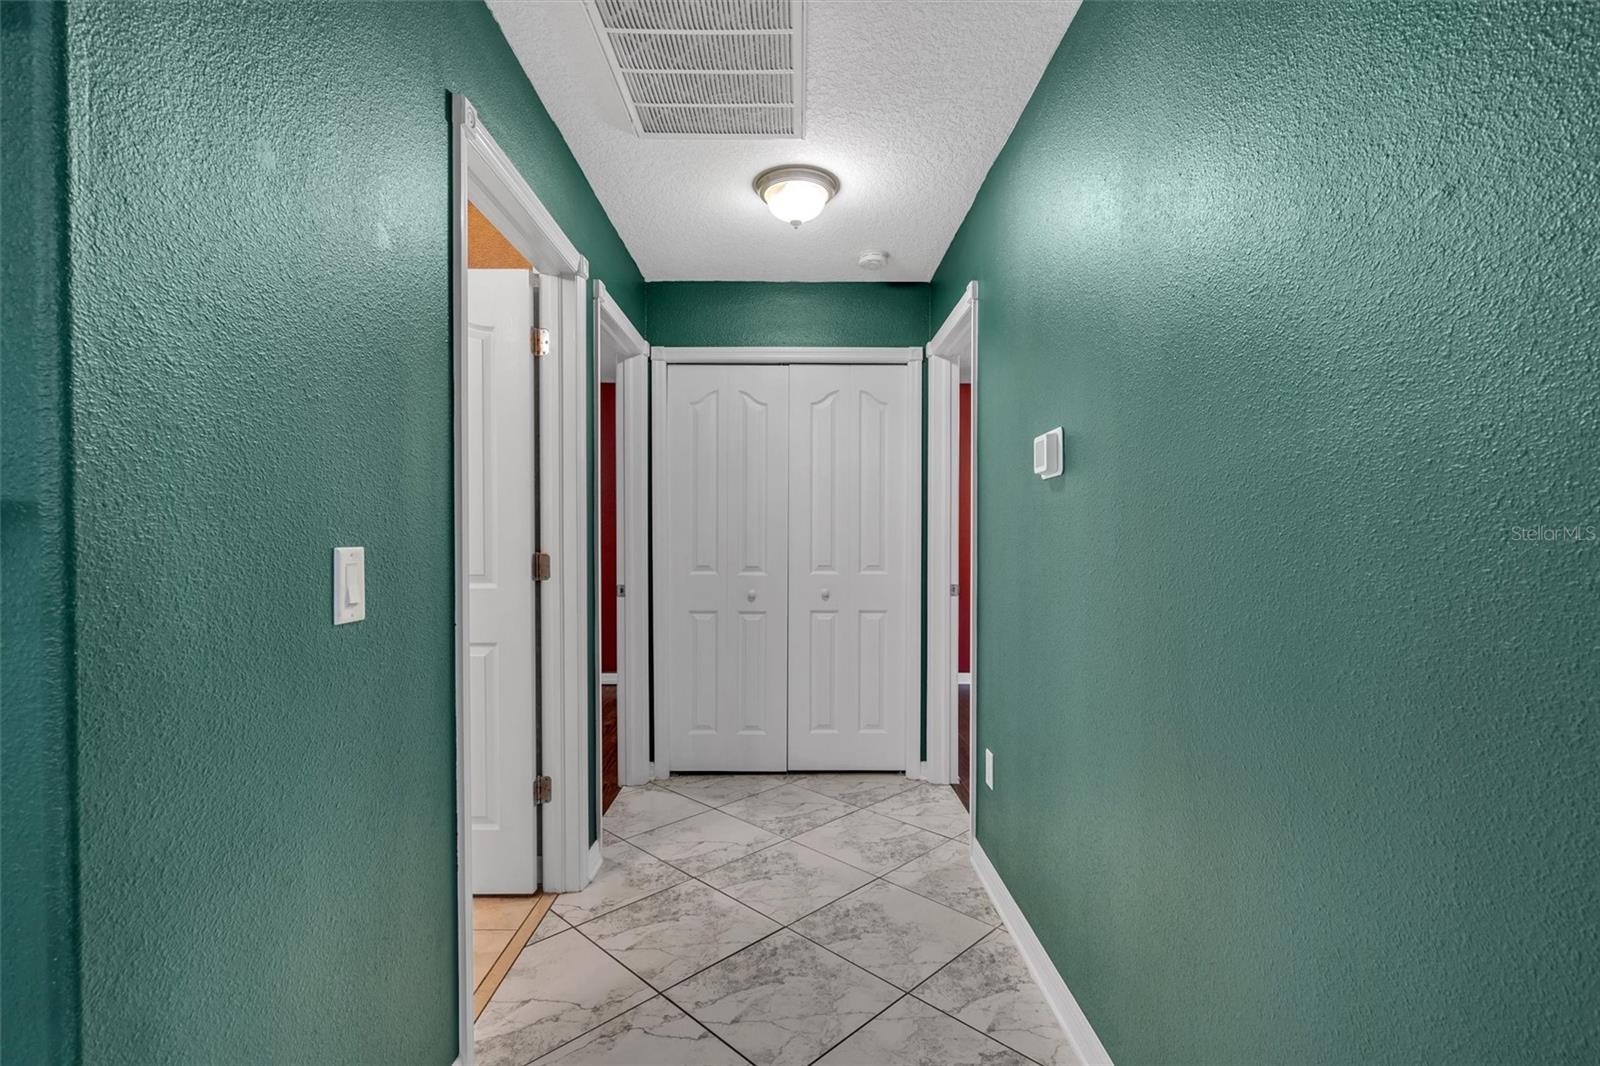 Hallway to guest bedrooms